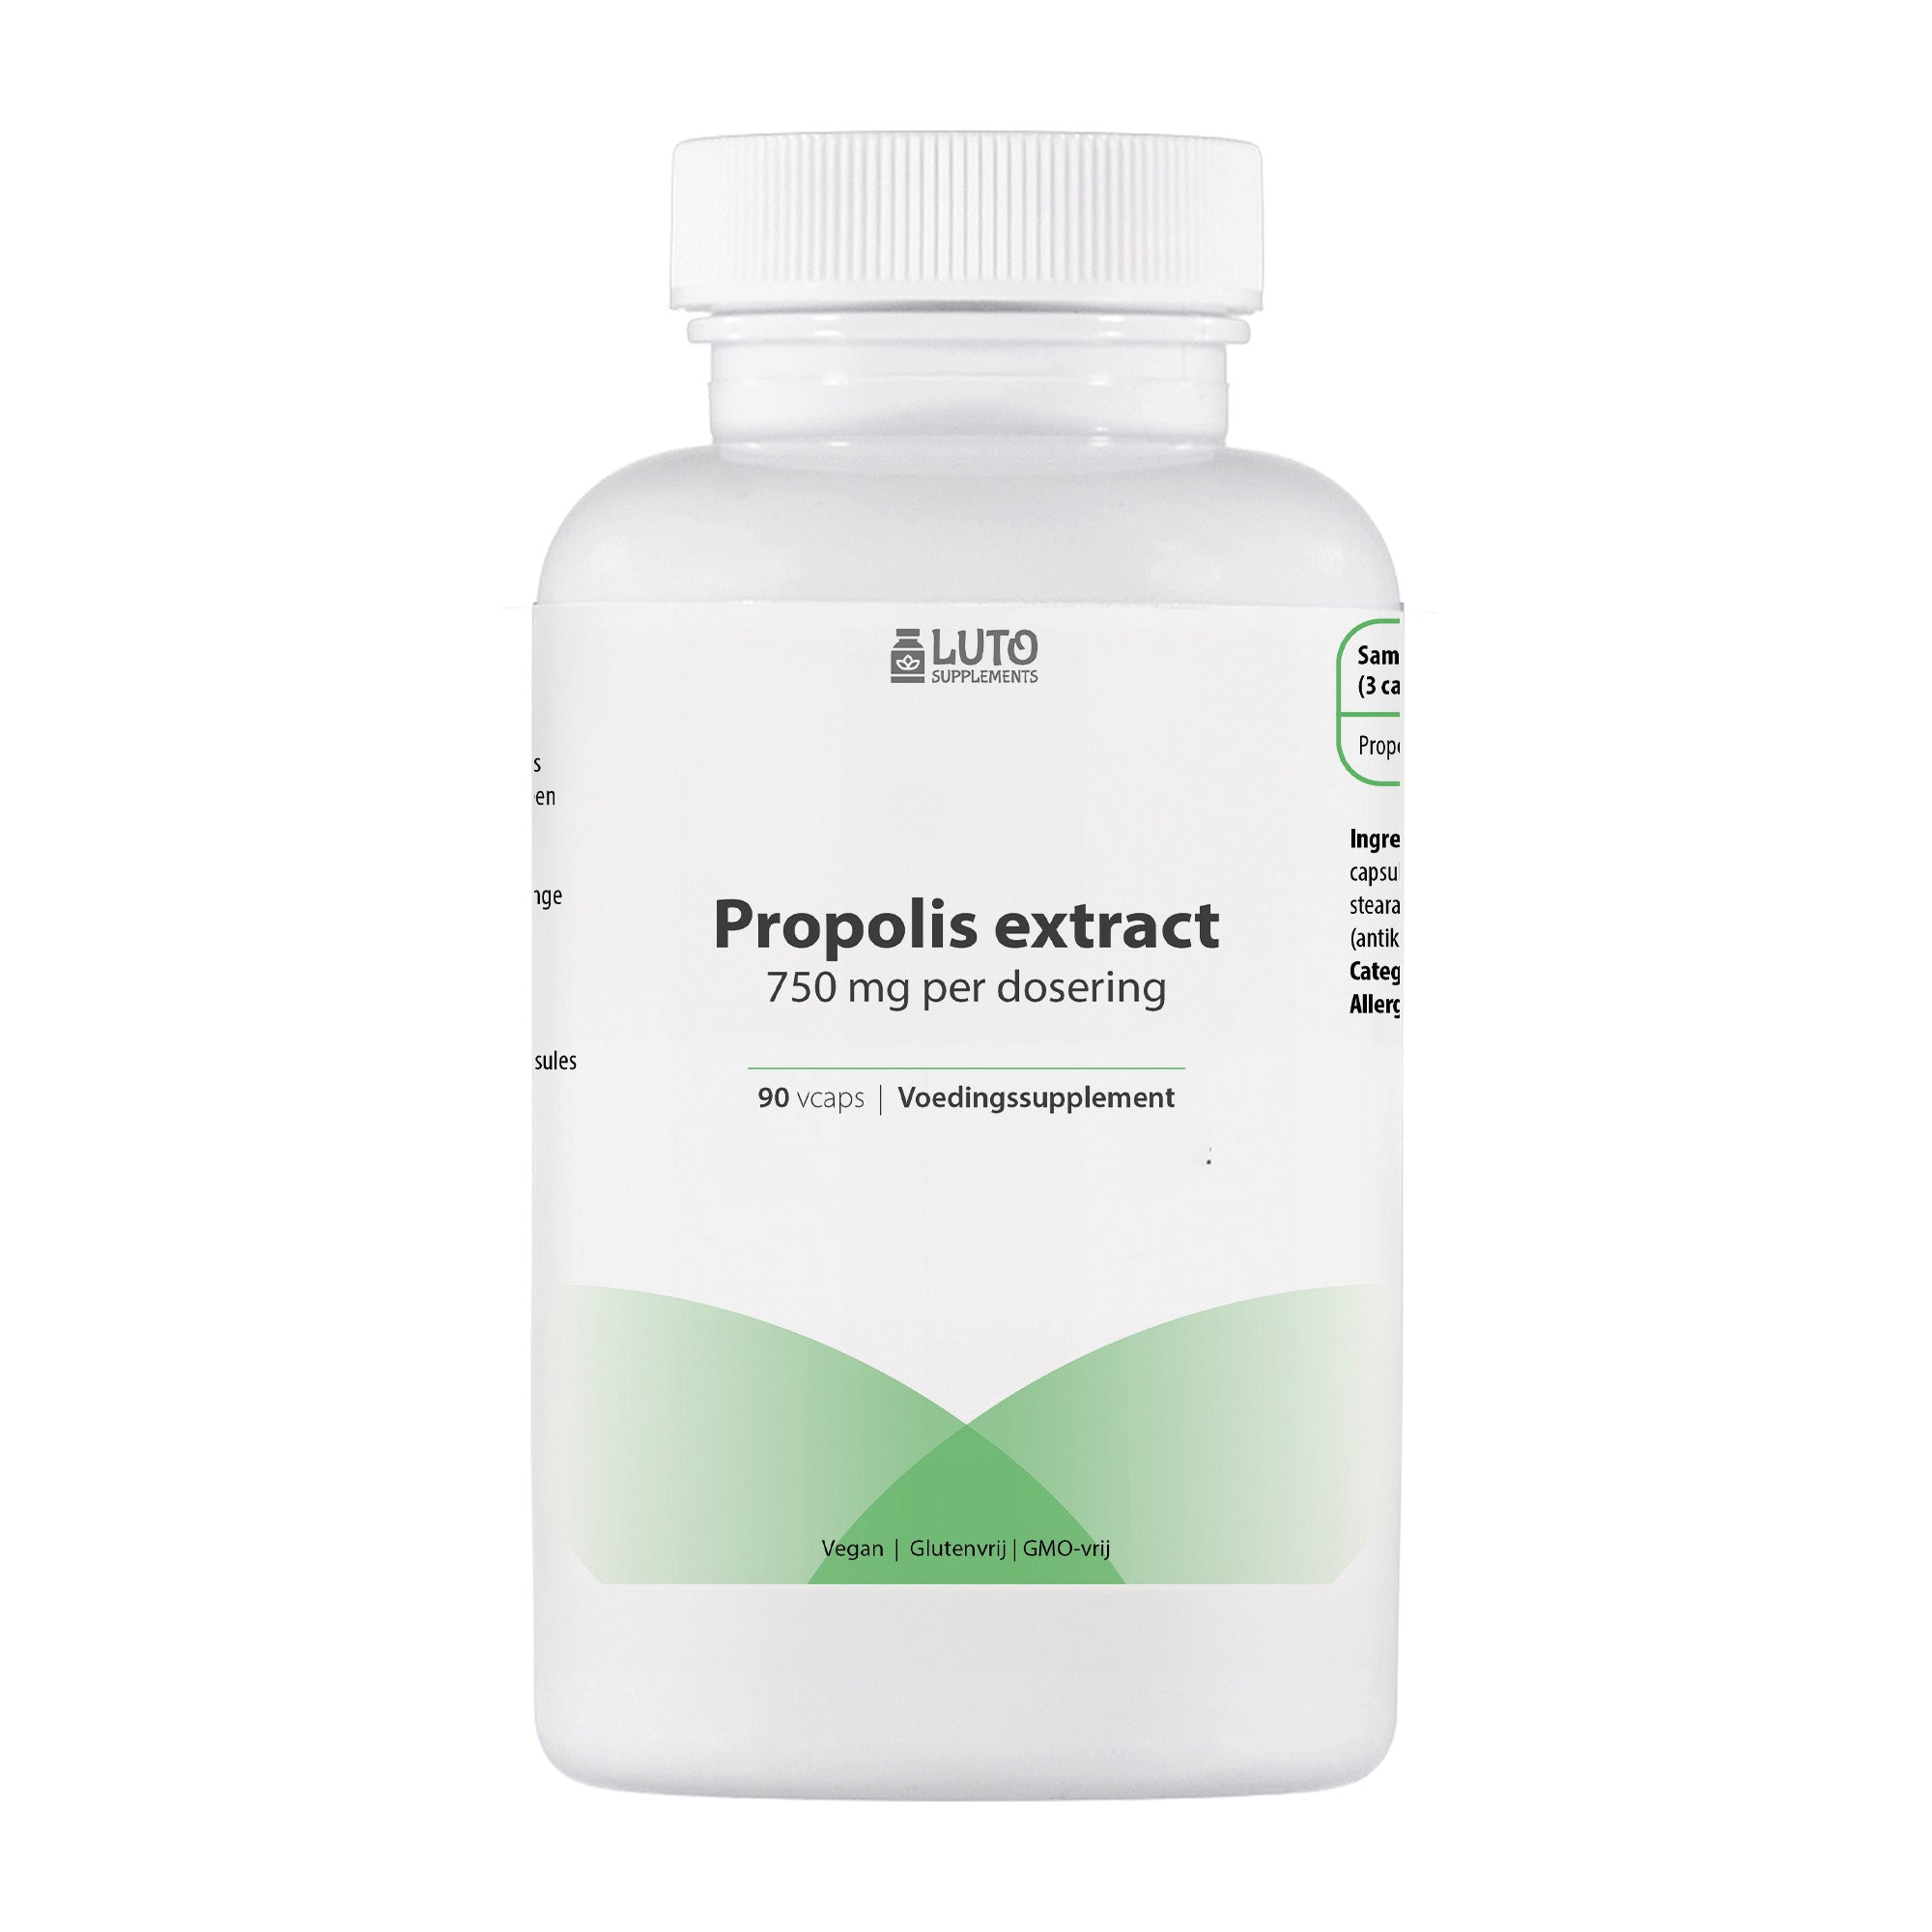 Propolis Extract | 750 mg per dosering | 90 Vcaps | Vrije ademhaling door de neus bij pollen* | Luto Supplements